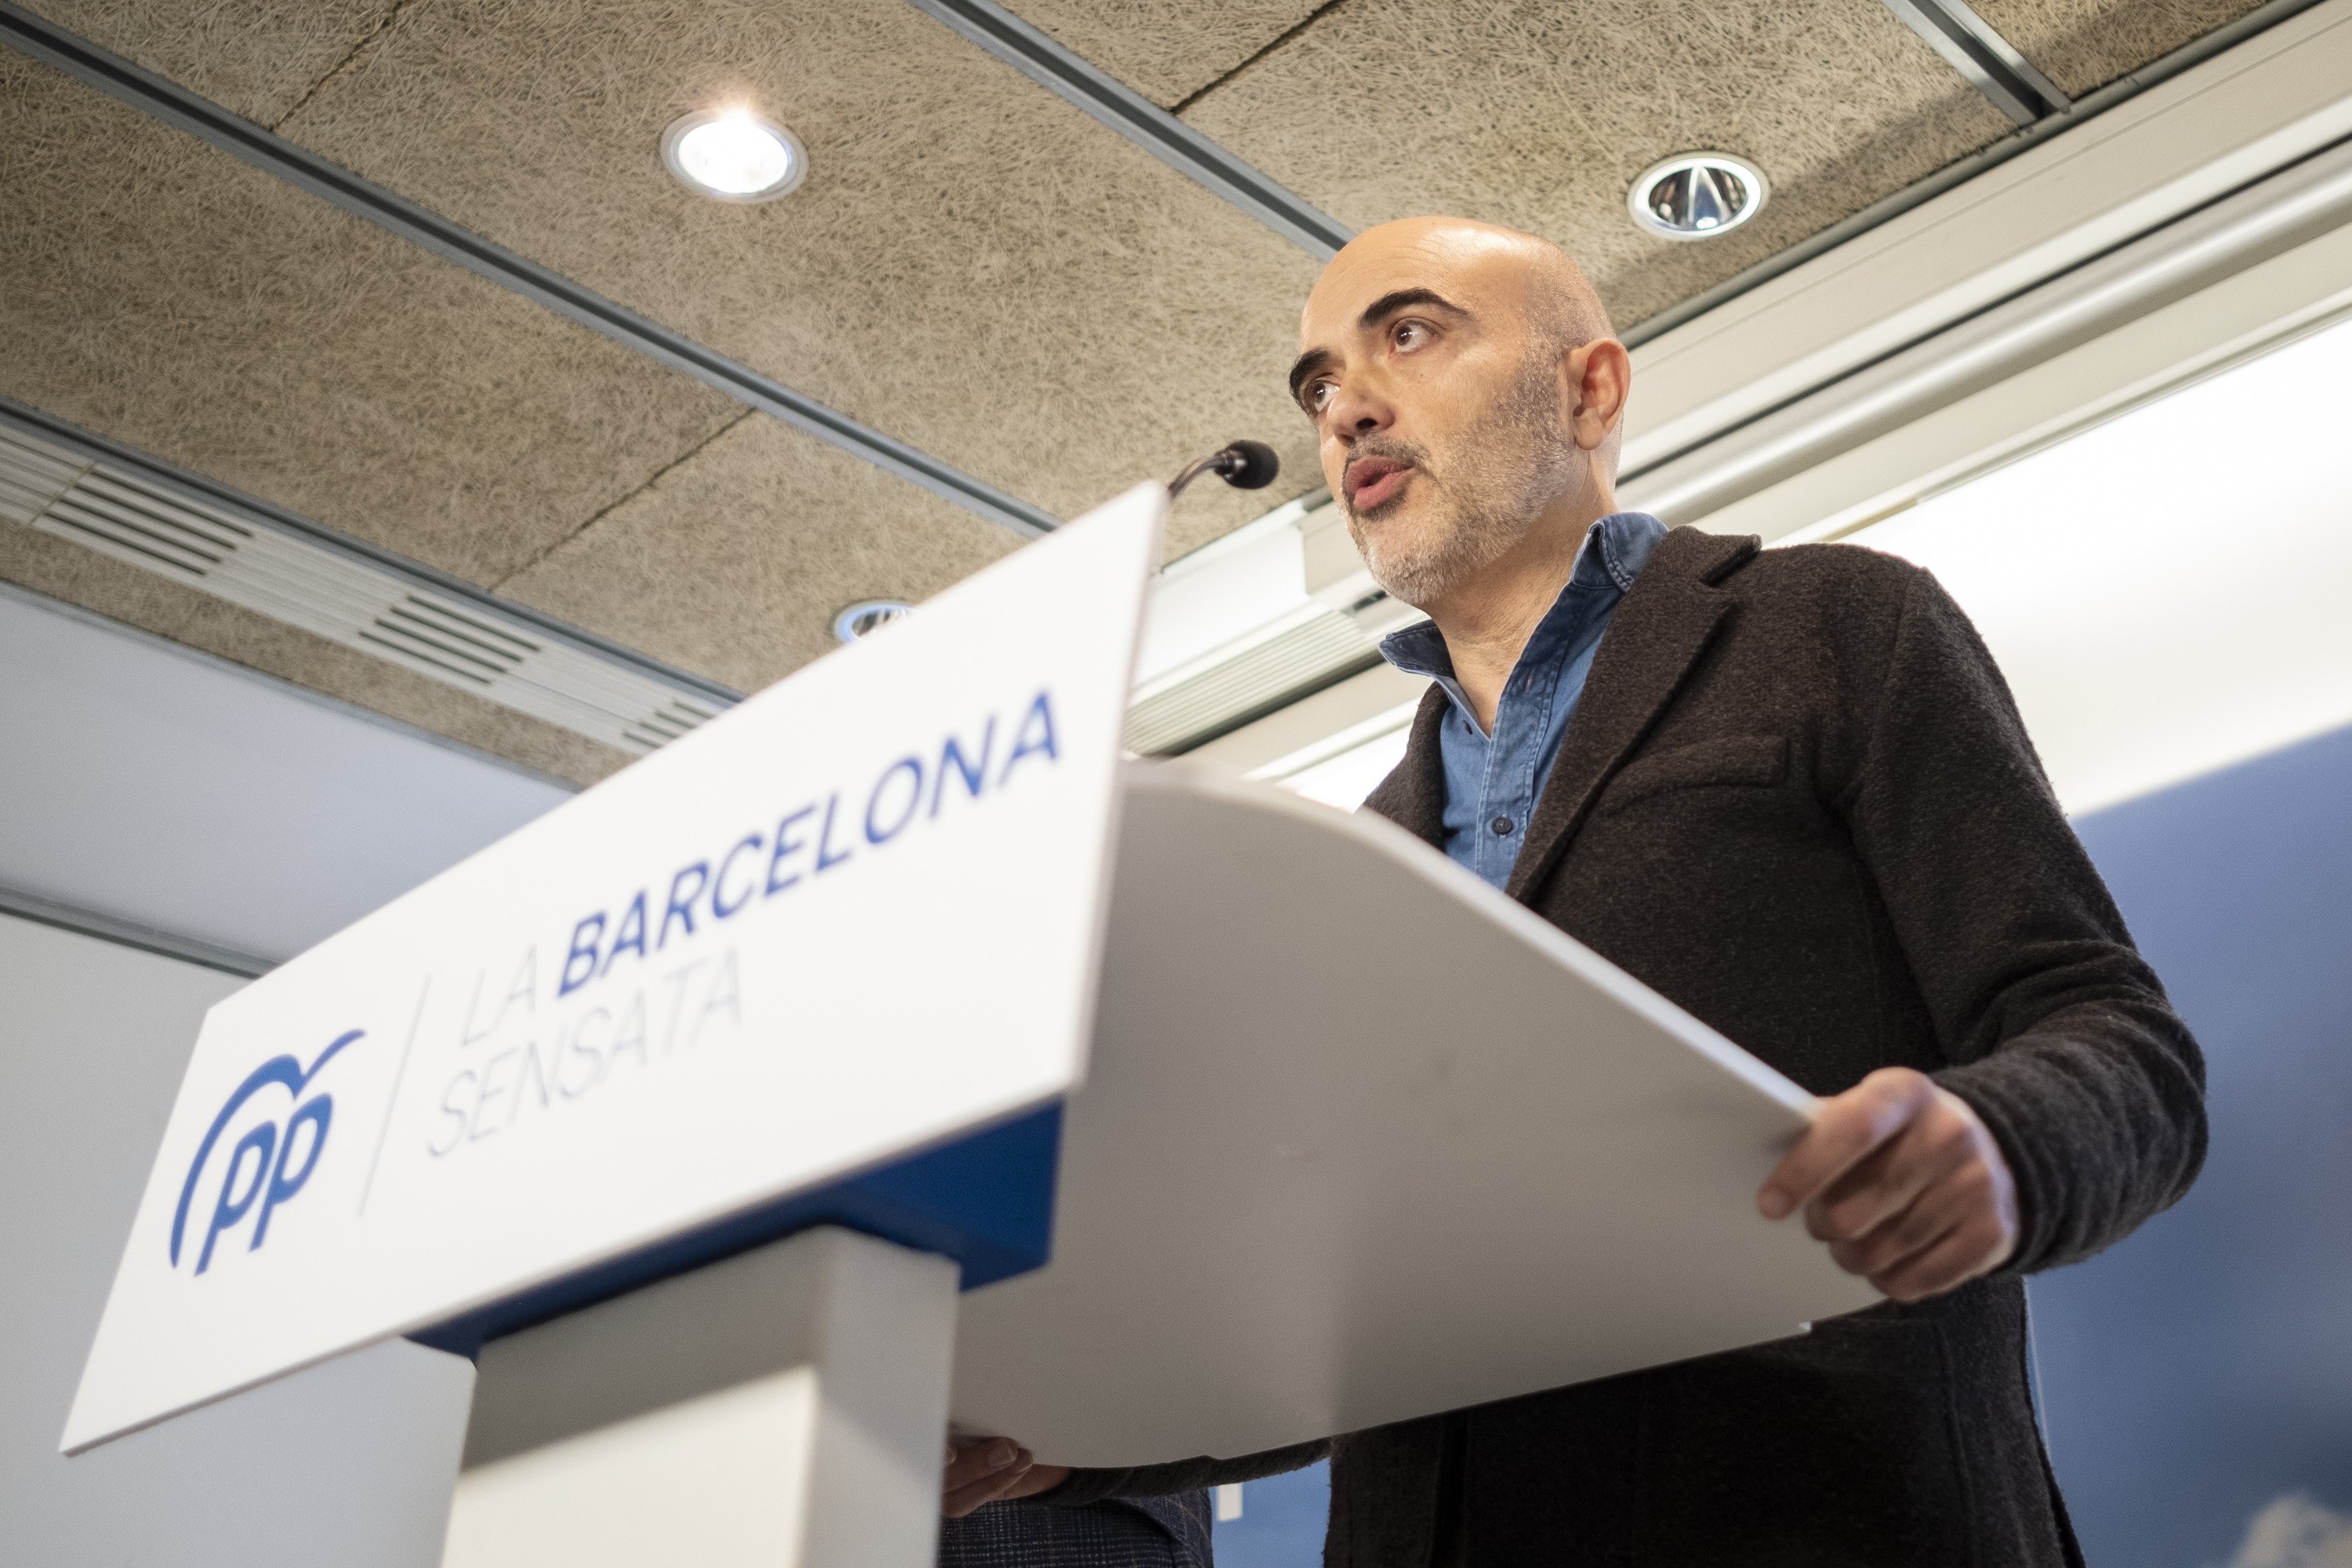 El PP presenta a Daniel Sirera como la gran esperanza del españolismo en Barcelona